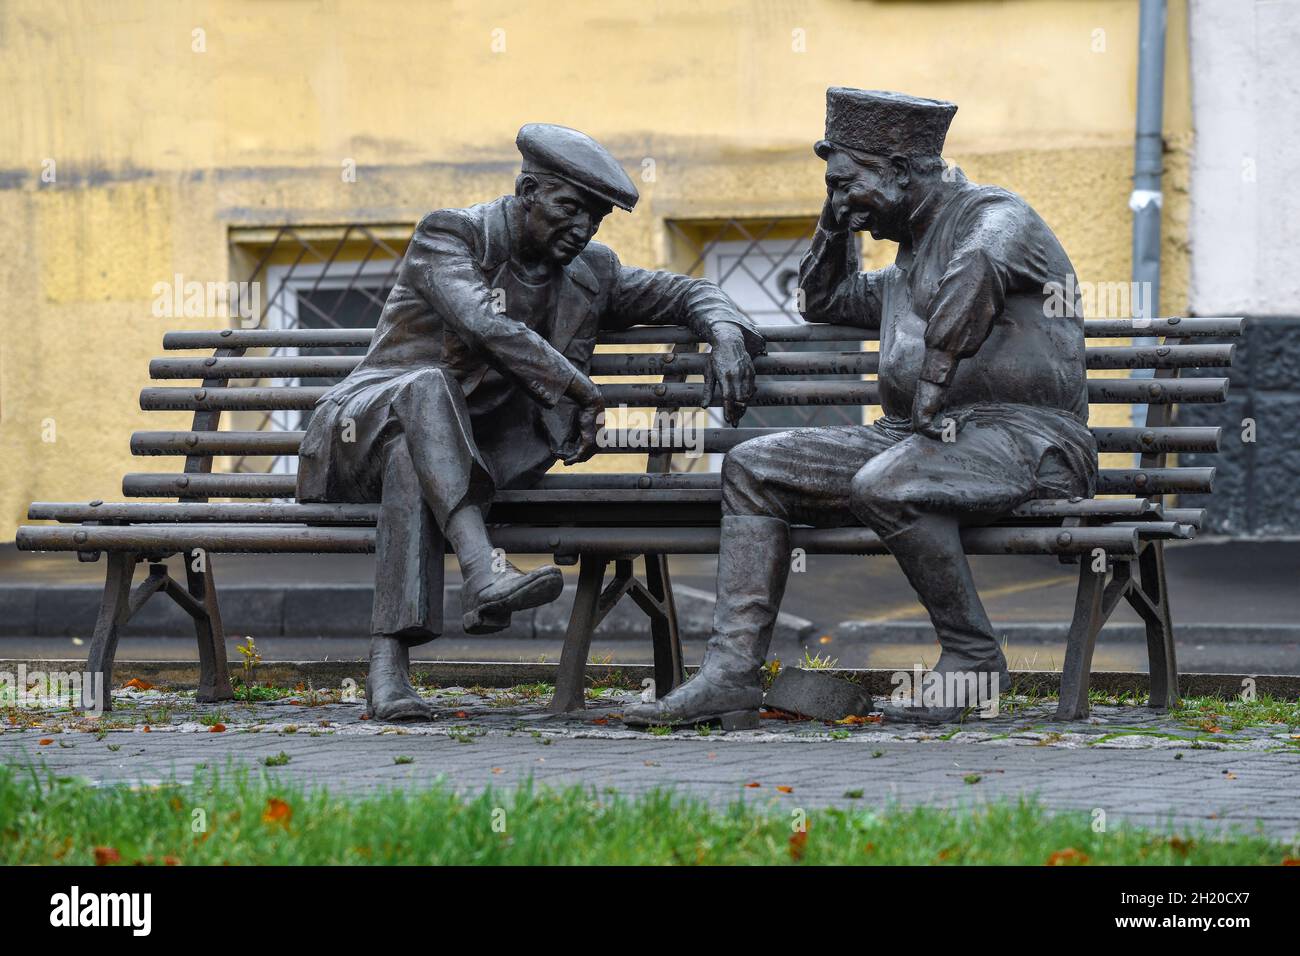 VLADIKAVKAZ, RUSSIA - OCTOBER 01, 2021: Street sculpture 'Backgammon Players' on October afternoon Stock Photo